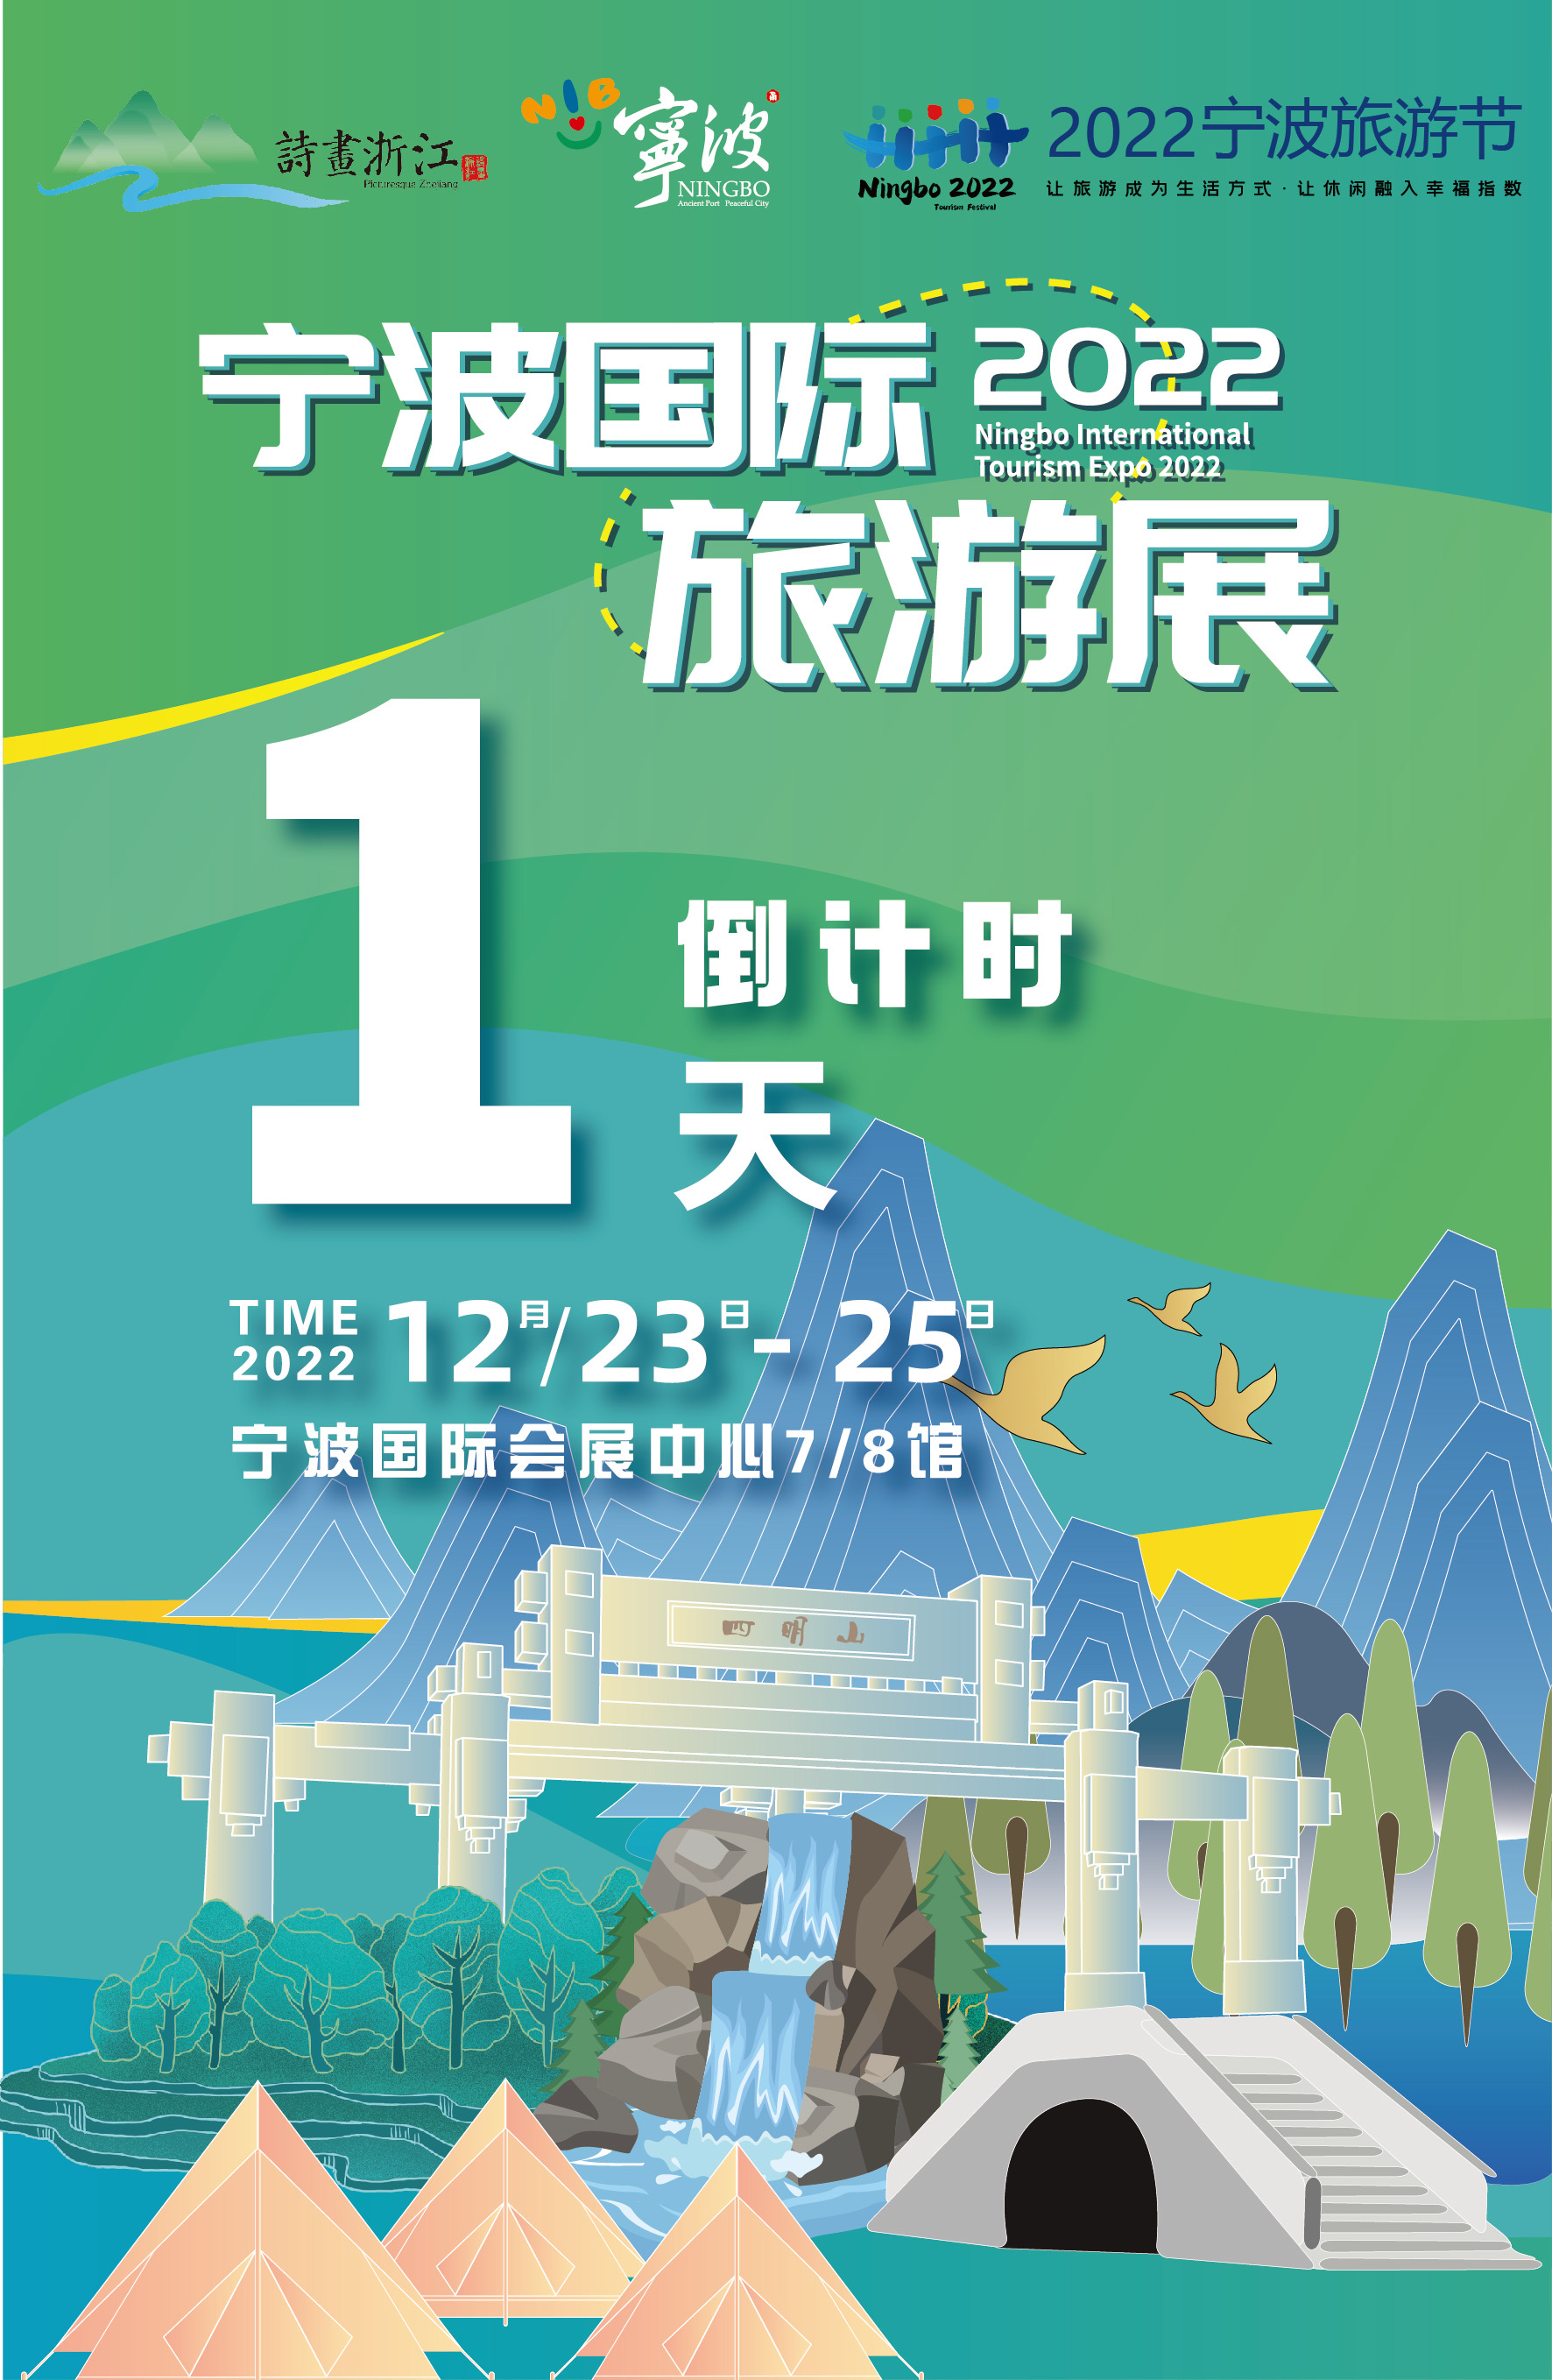 未来三天,宁波国际旅游展发放百万专场消费券,还有诸多破价爆款产品